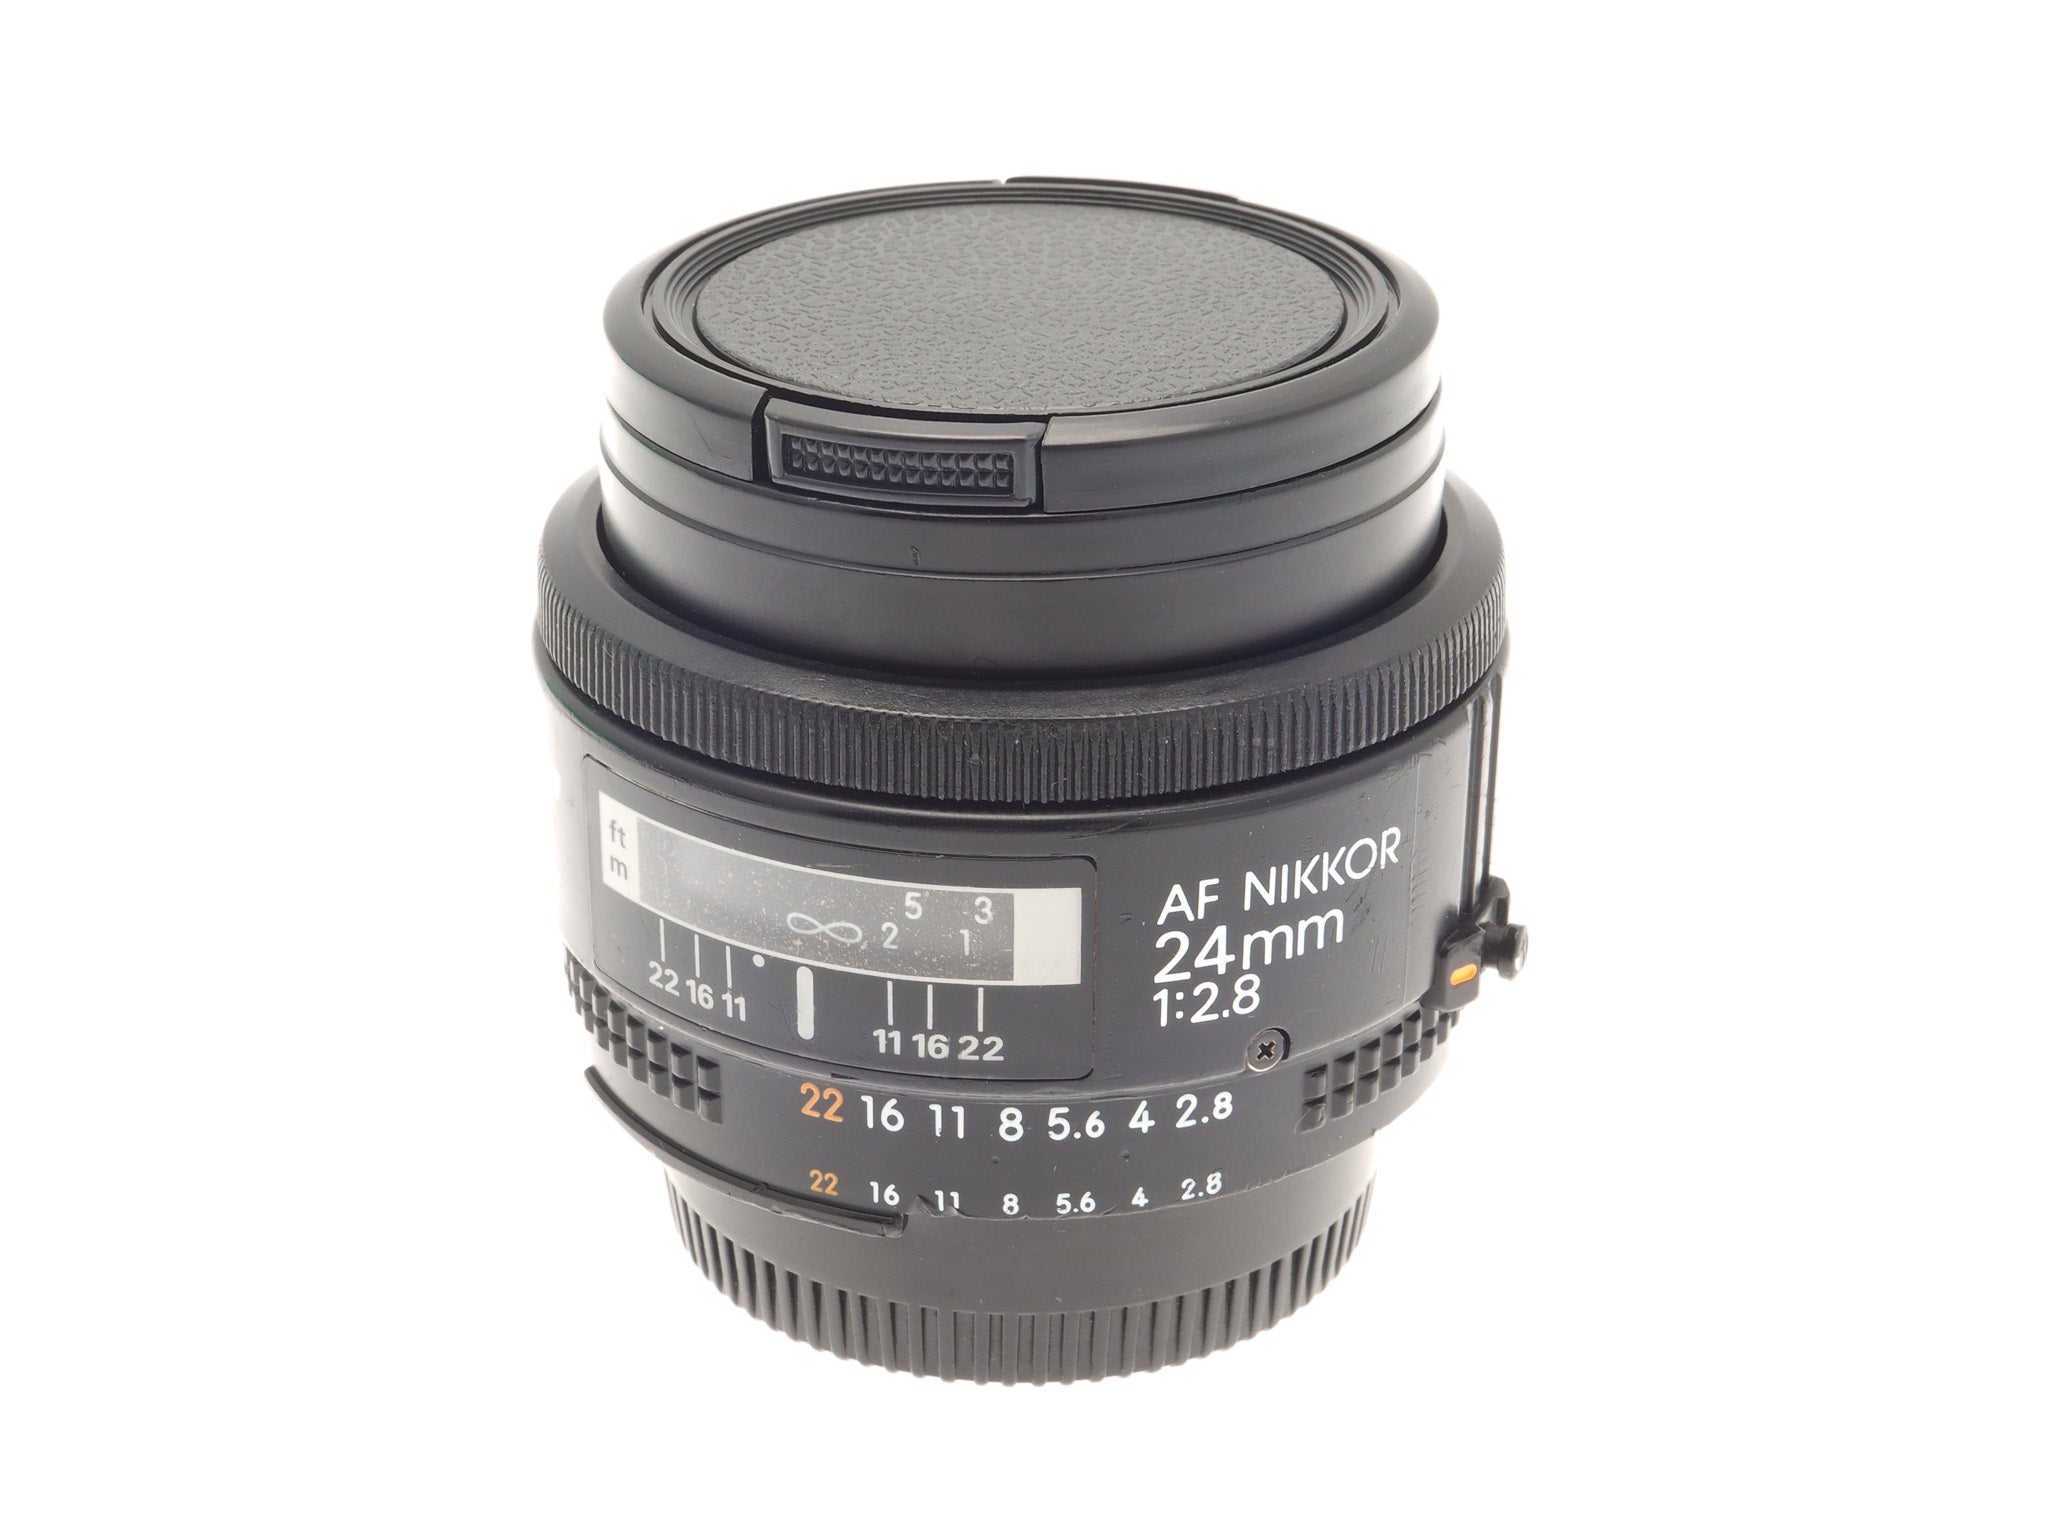 Nikon 24mm f2.8 AF Nikkor - Lens